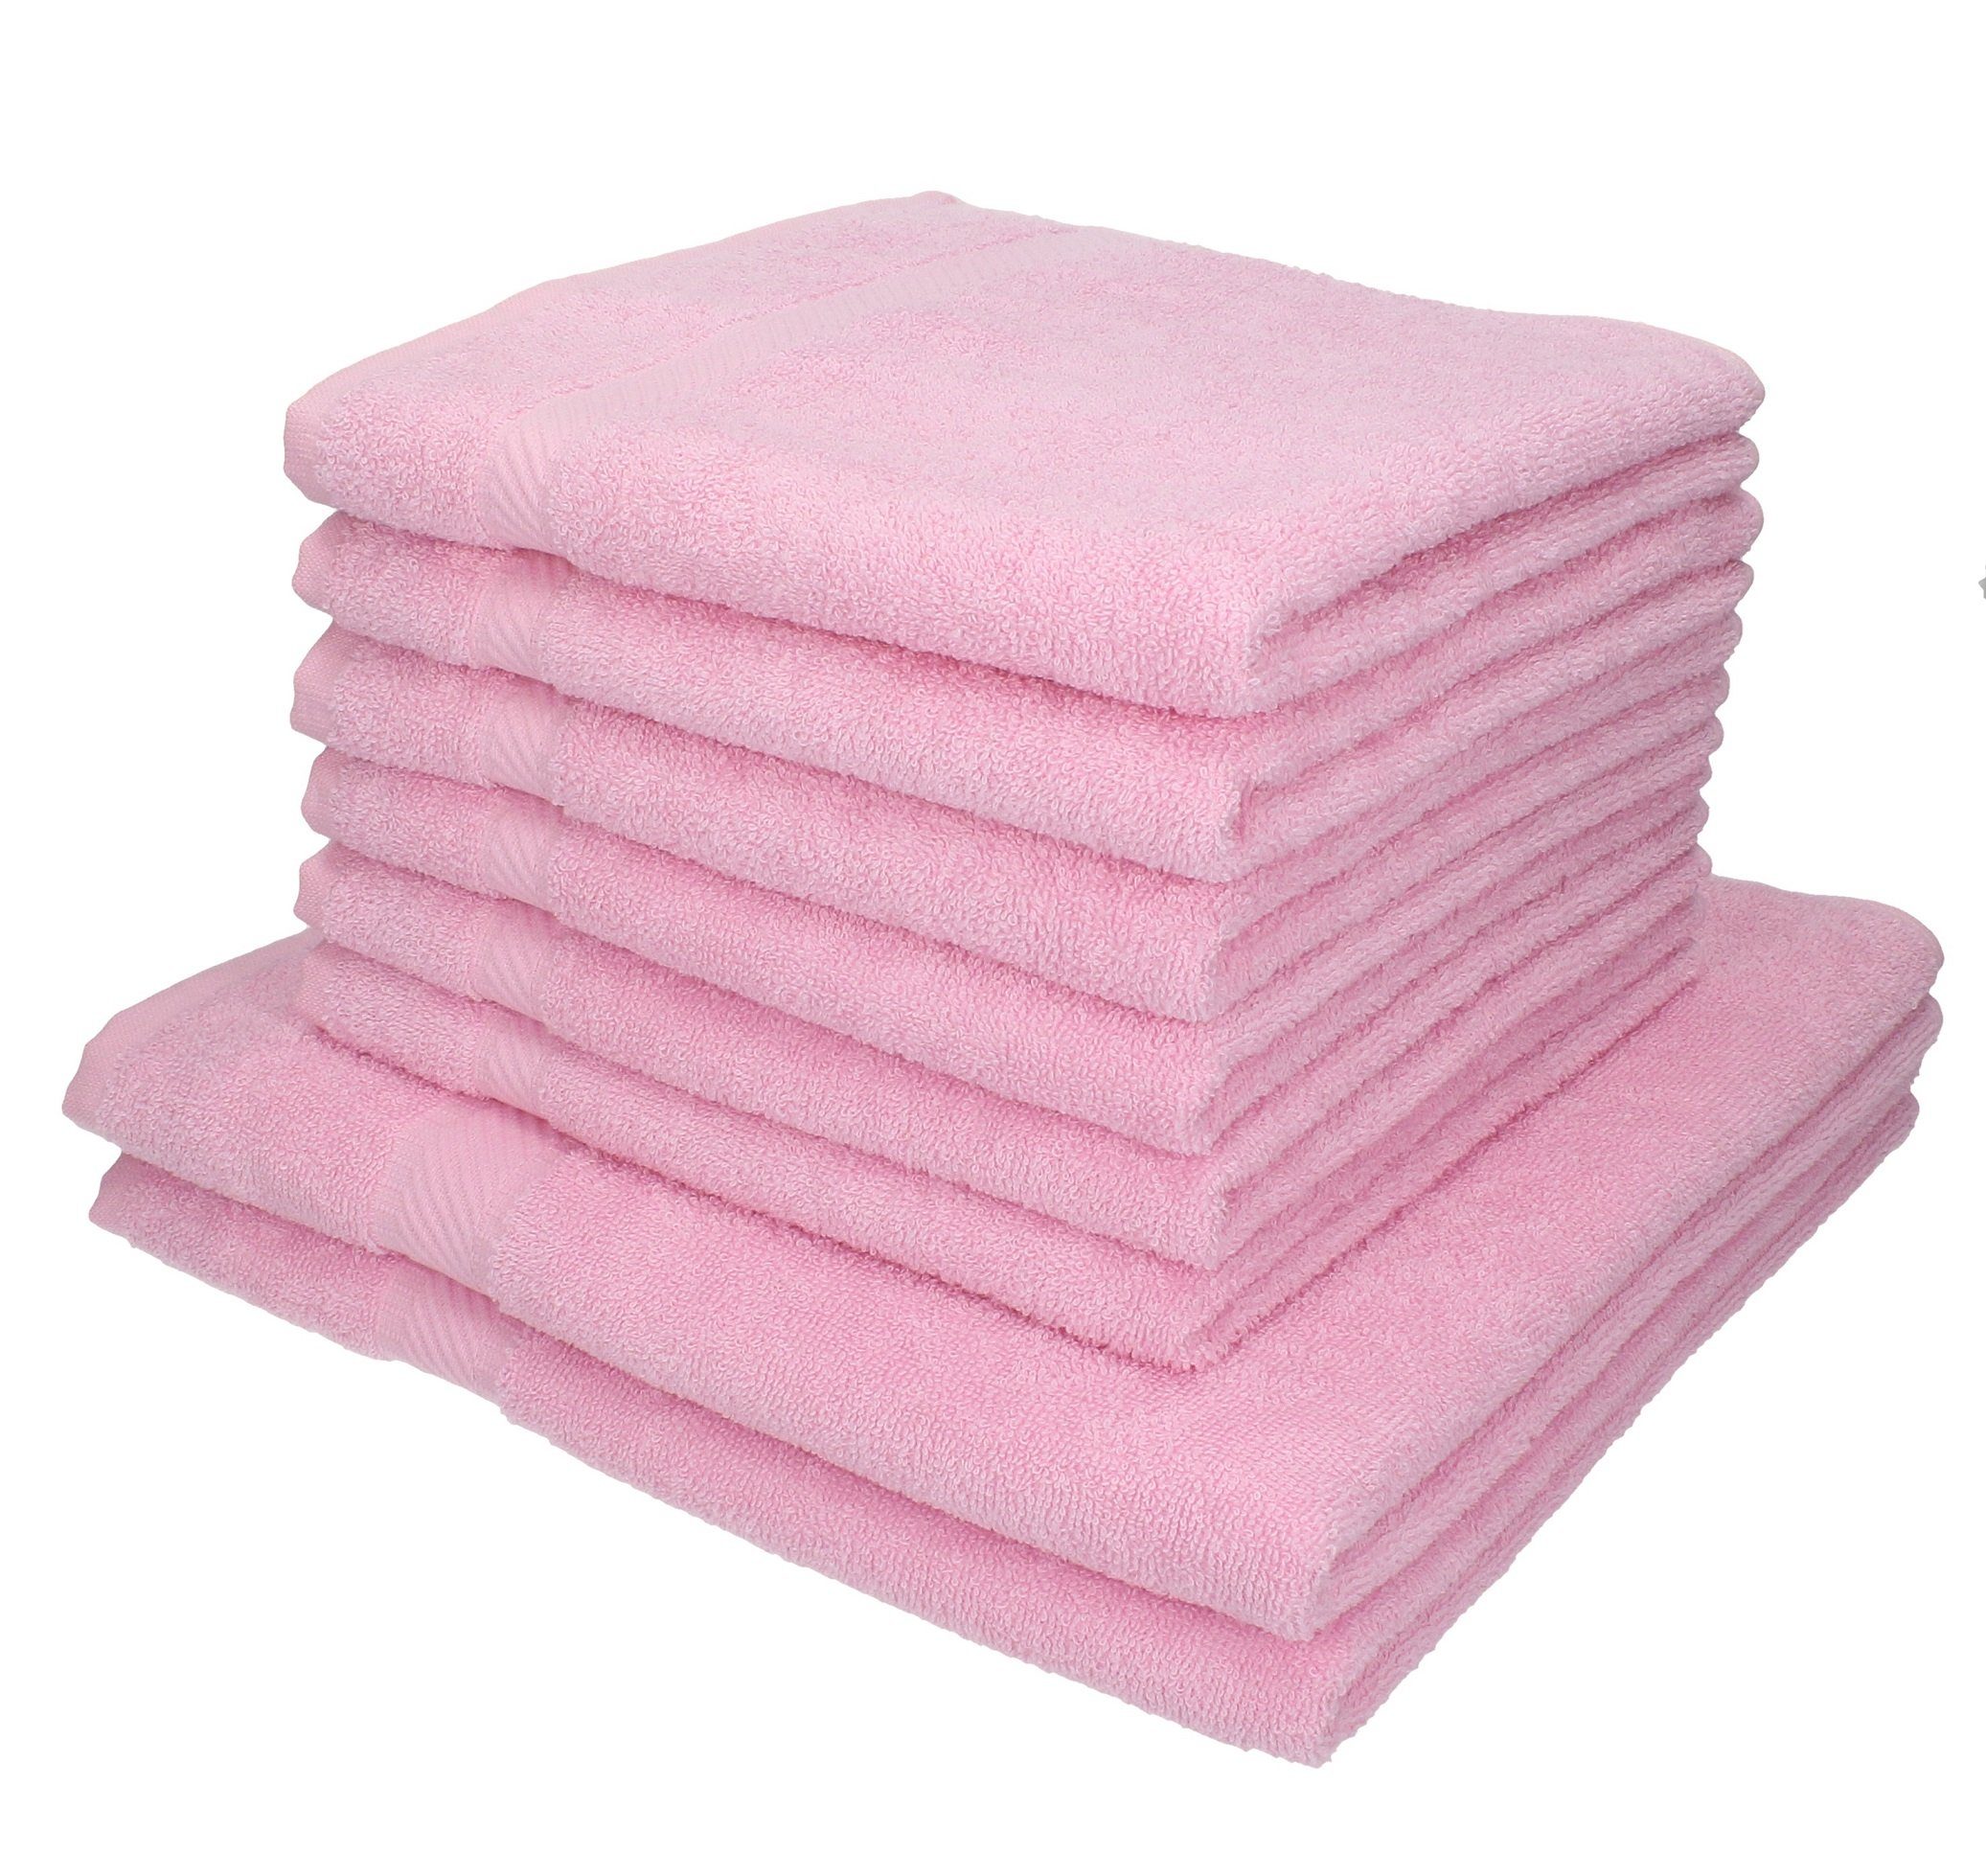 Betz Handtuch Set 8-tlg. Handtuch-Set Palermo Farbe rosé, 100% Baumwolle